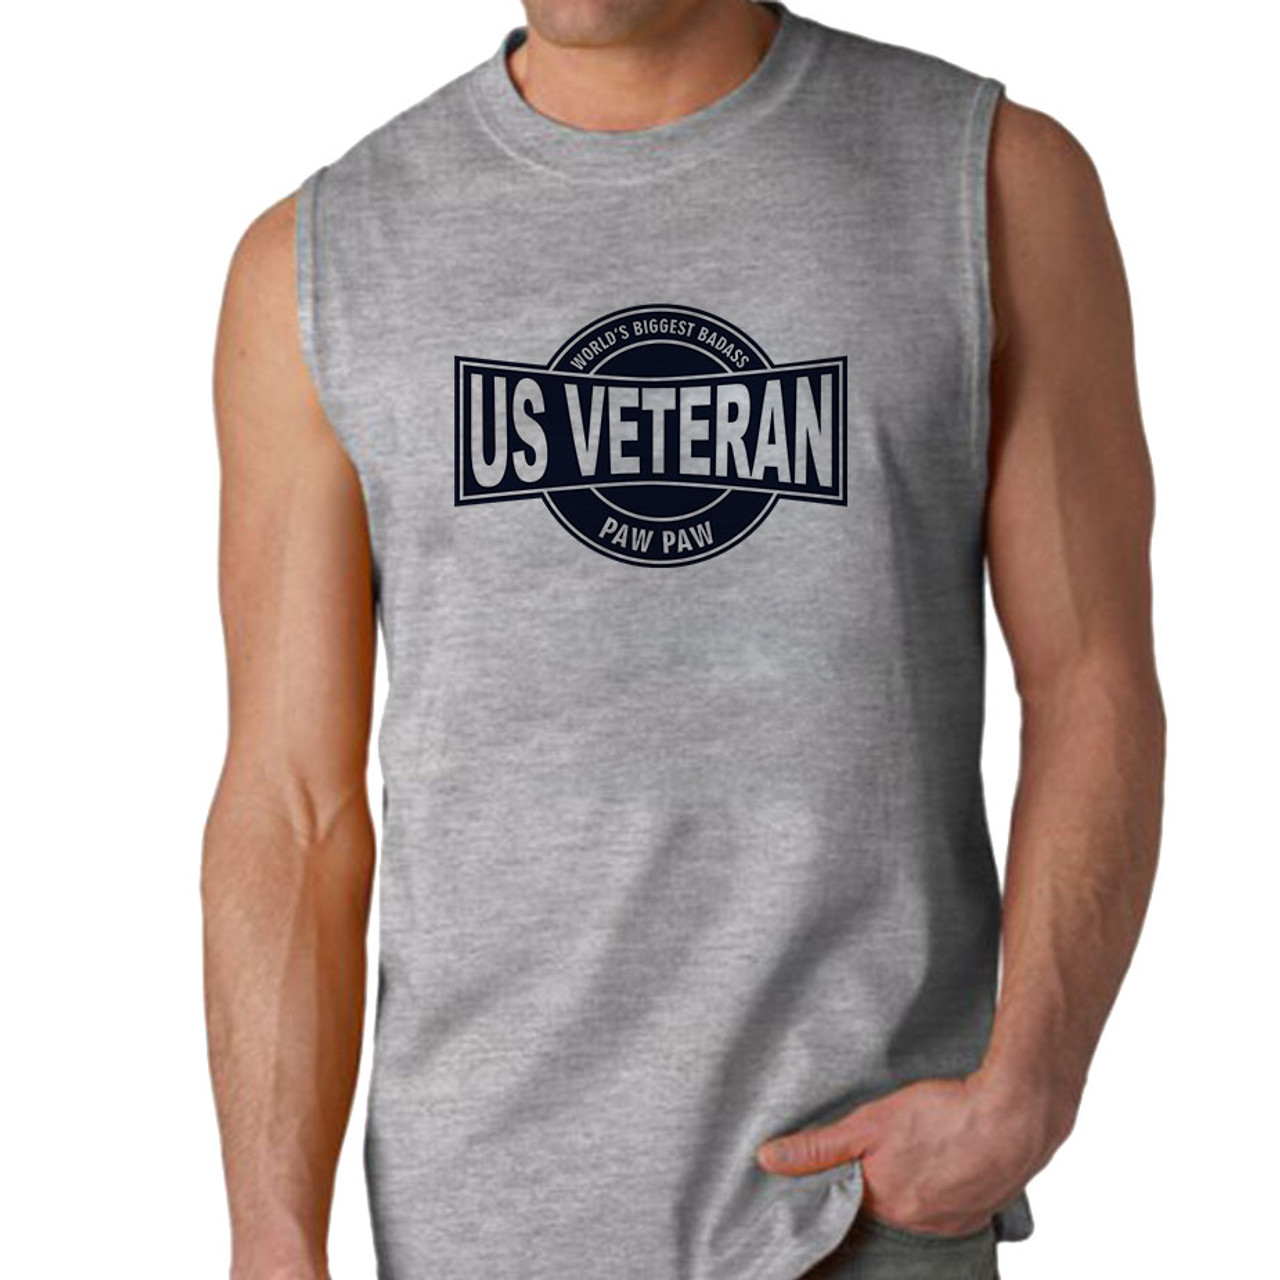 World's Biggest Badass US Veteran Paw Paw Sleeveless Shirt